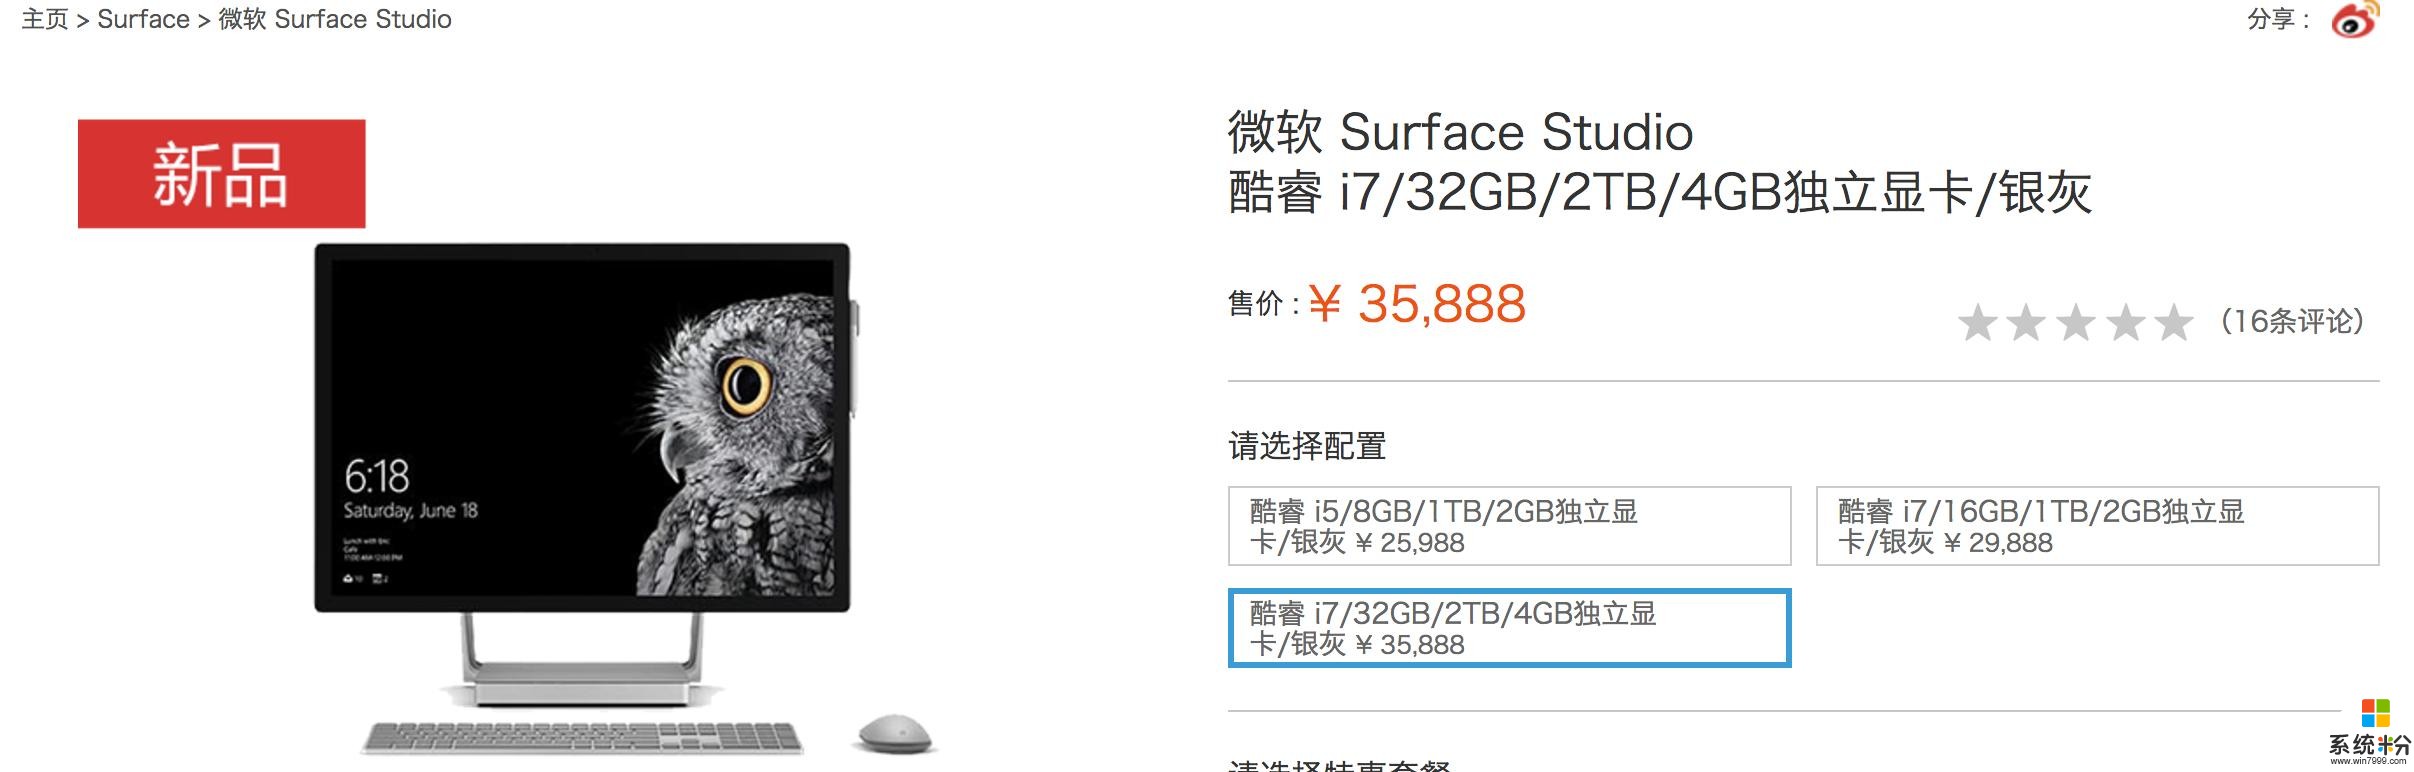 微軟中國官網新上架三款surface新品5888元起(9)